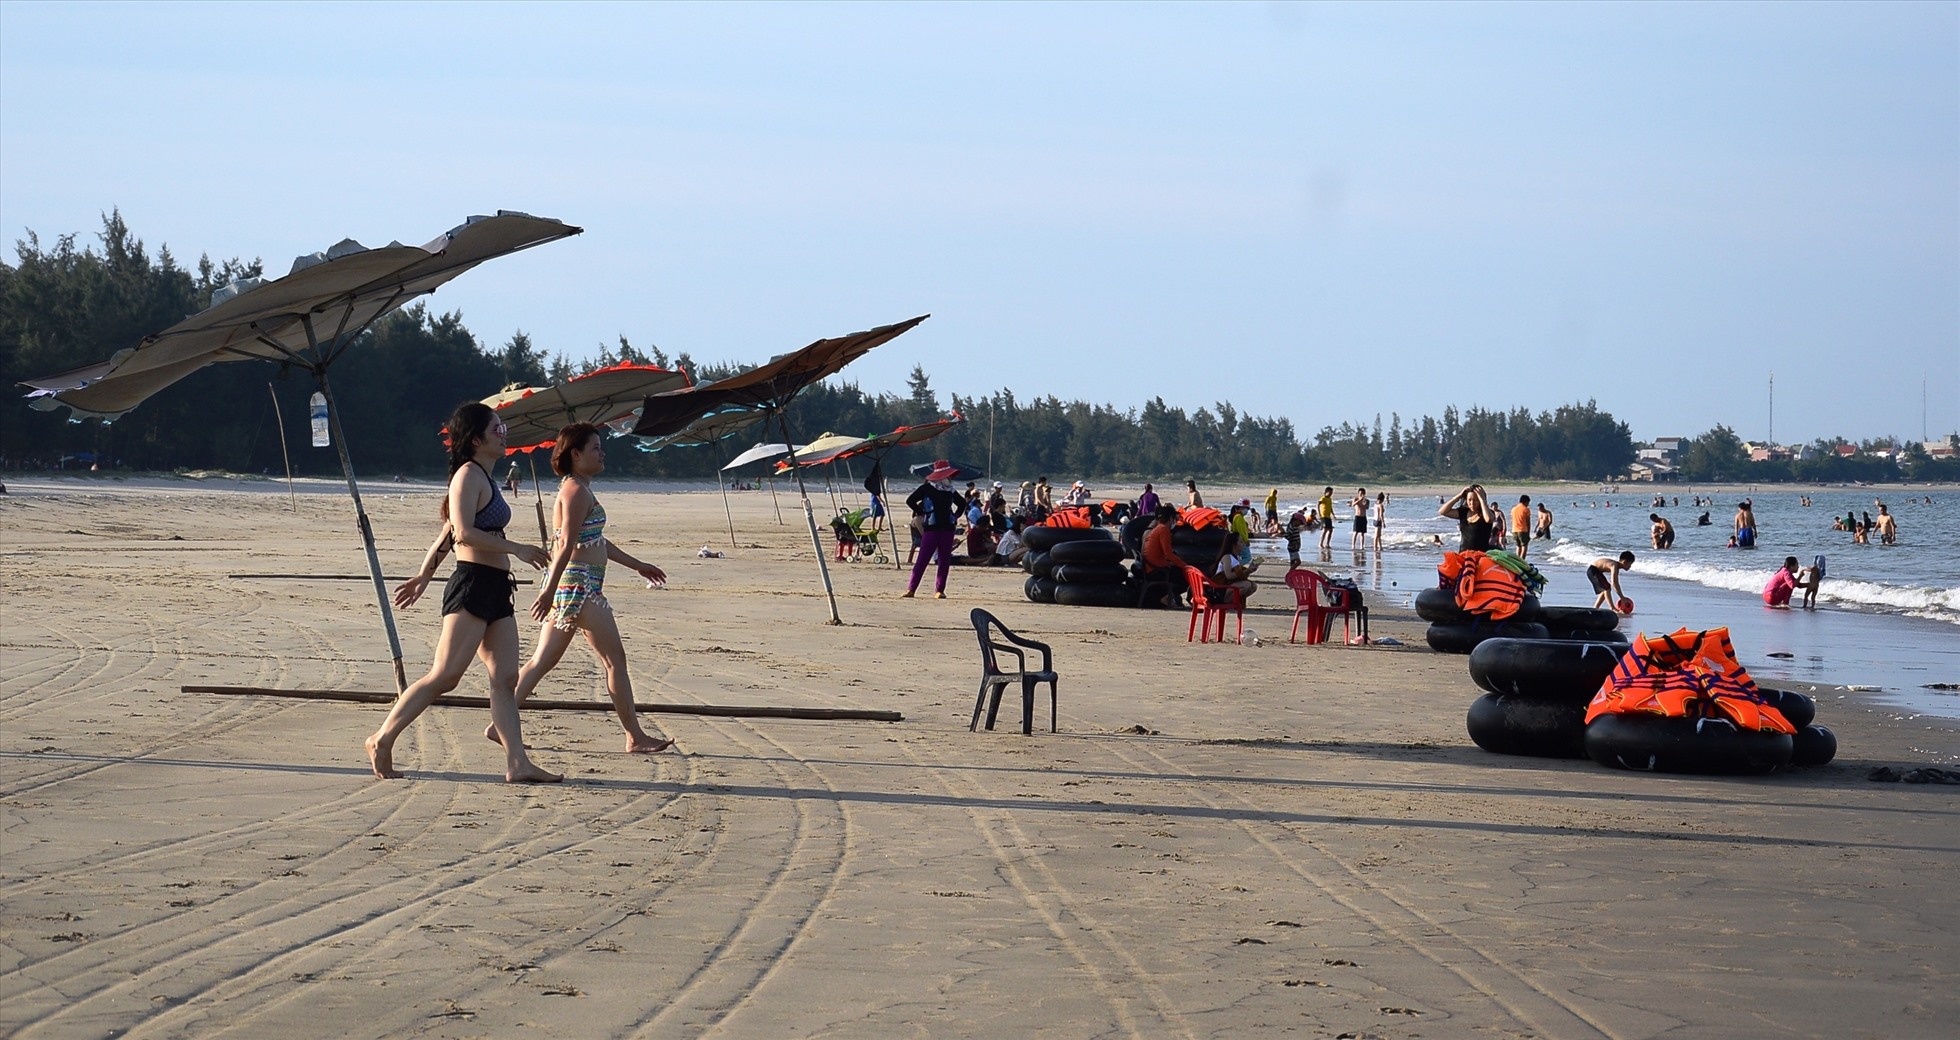 Biển Mỹ Khê, TP.Quảng Ngãi, dài khoảng 7km, với những bãi cát mịn trải dài, được đánh giá là một trong những bãi biển đẹp nhất Việt Nam. Tuy nhiên, Quảng Ngãi chưa khai thác hết tiềm năng, thế mạnh của bãi biển này. Ảnh: Ngọc Viên